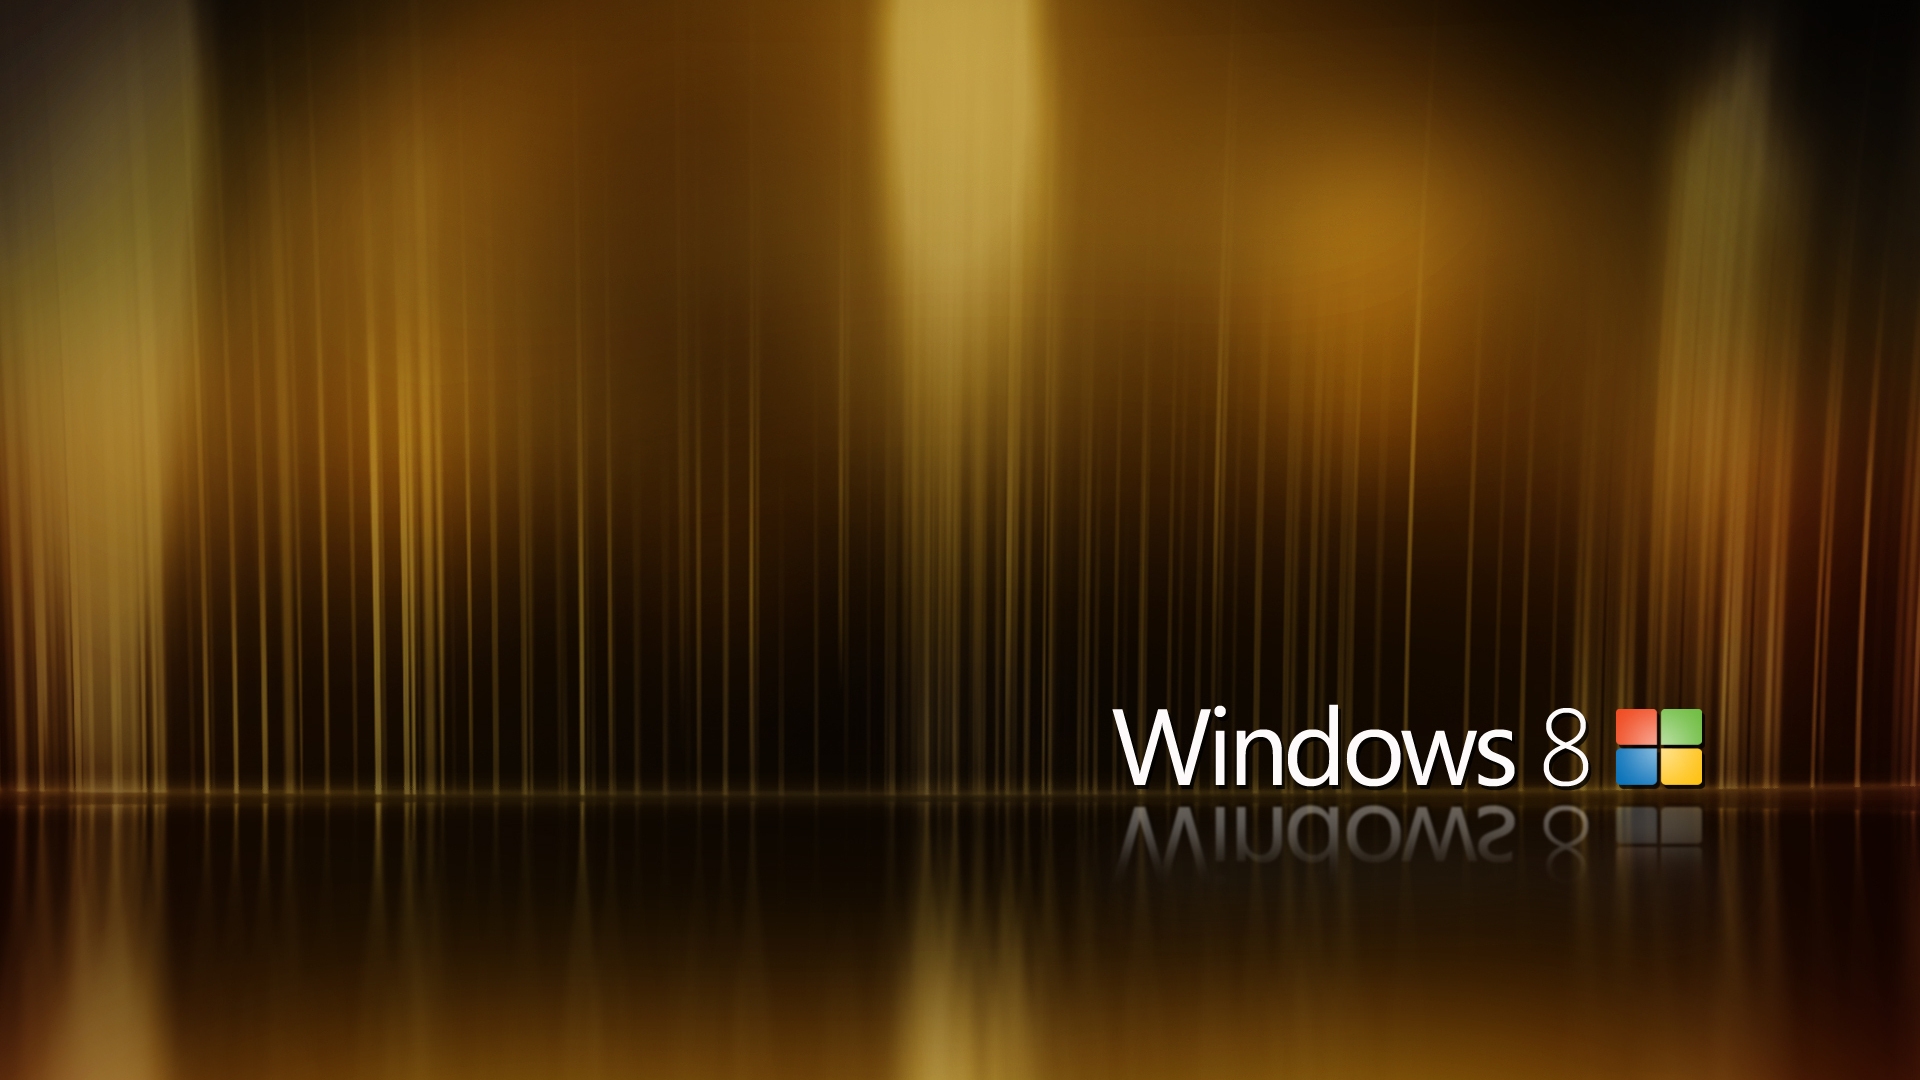 Hình nền Windows 8 màu xanh: Hãy trang trí desktop của bạn với các hình nền Windows 8 đầy tươi sáng và hấp dẫn. Màu xanh trong các hình nền này đem lại sự yên bình và thư thái cho người dùng, giúp bạn cảm thấy thật sự thư giãn sau một ngày làm việc mệt mỏi. Khám phá các mẫu hình nền màu xanh mới nhất của Windows 8 ngay bây giờ!